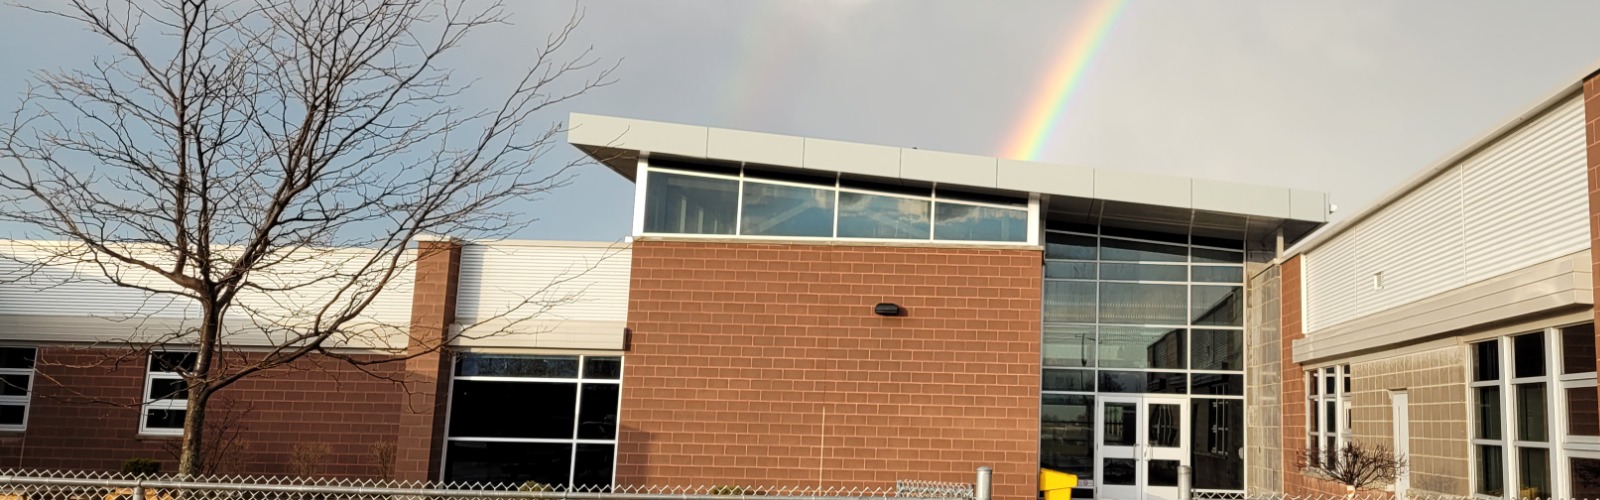 School with rainbow